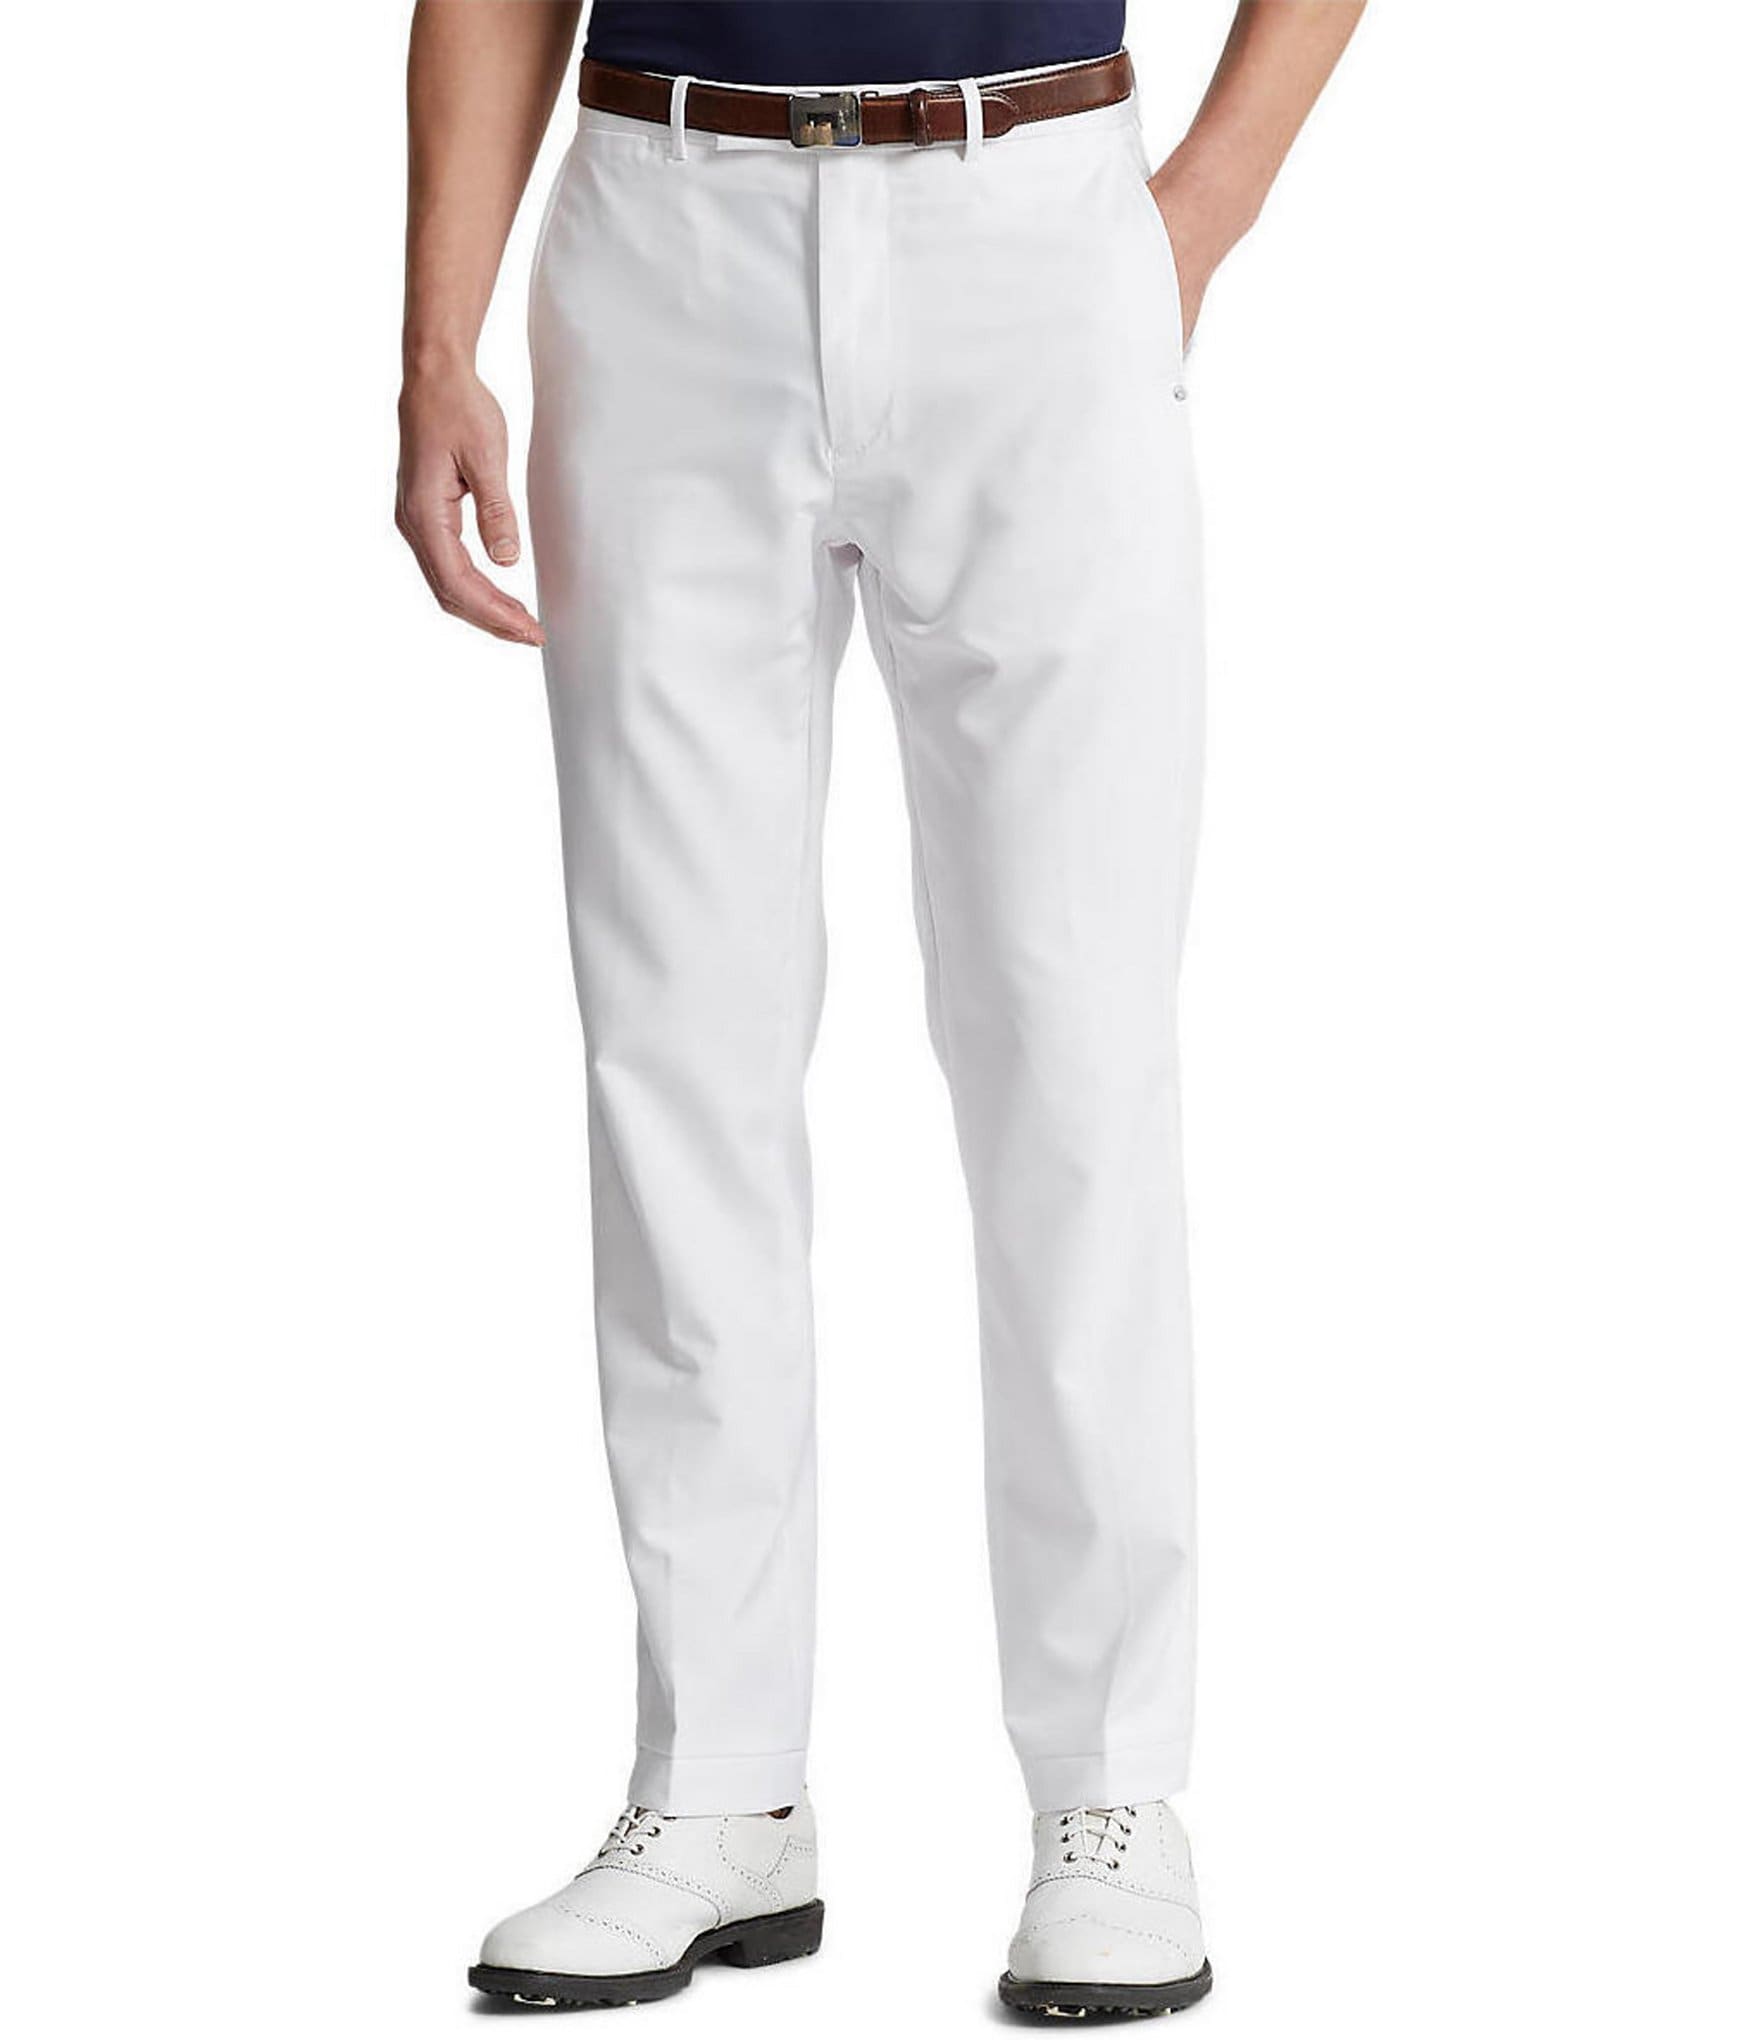 orden a pesar de Insistir Polo Ralph Lauren RLX Golf Tailored Fit Featherweight Twill Pants |  Dillard's